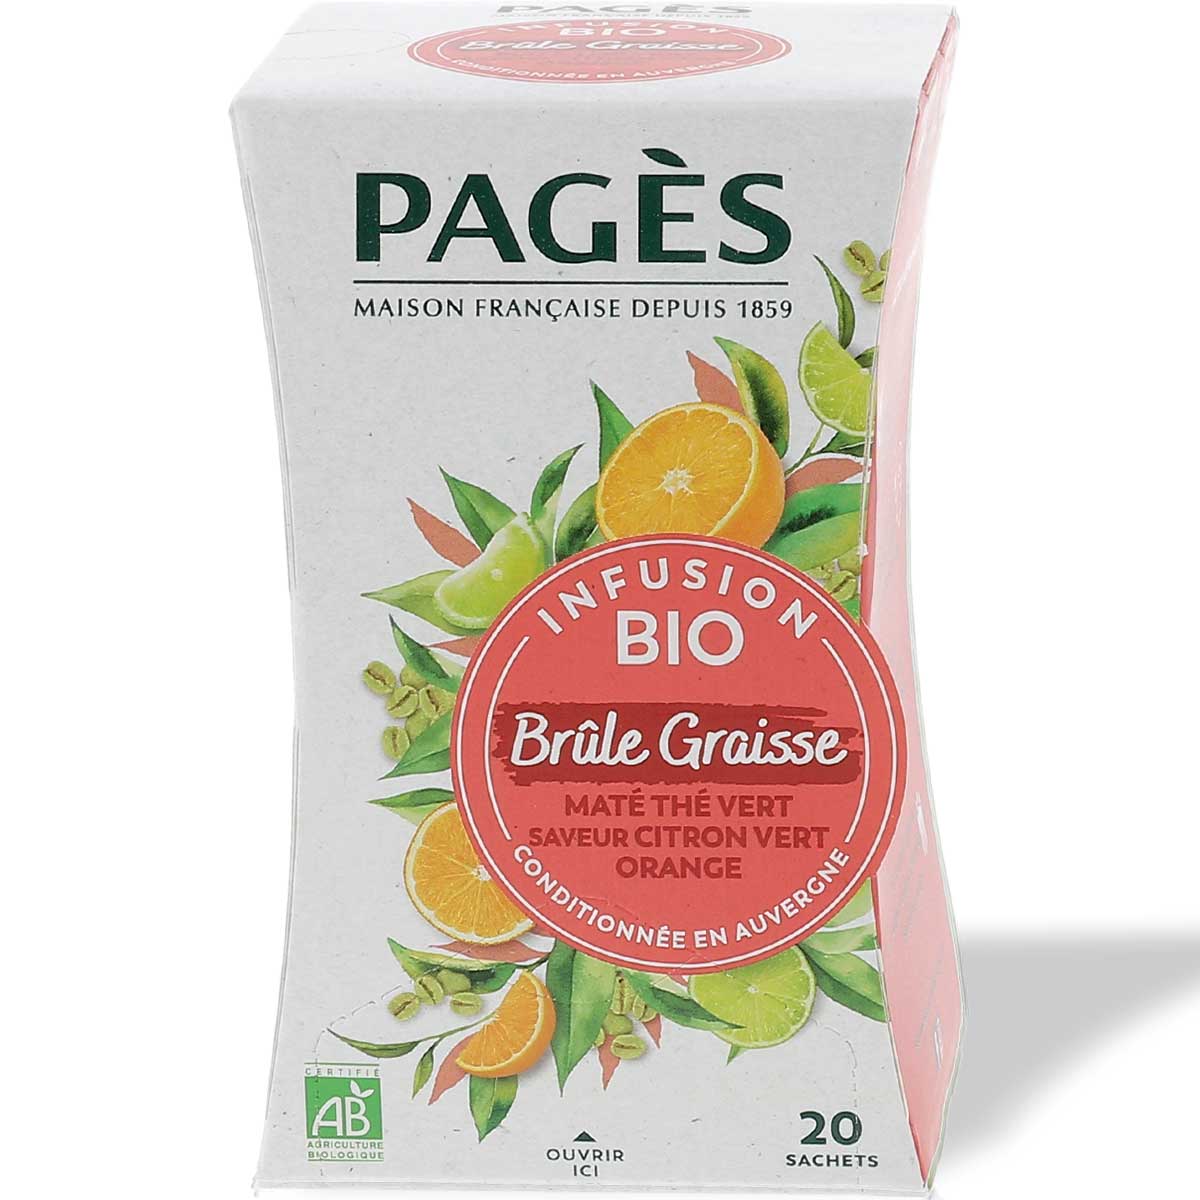 Infusion bio Pagès Brule Graisse (Maté, thé vert, Citron)